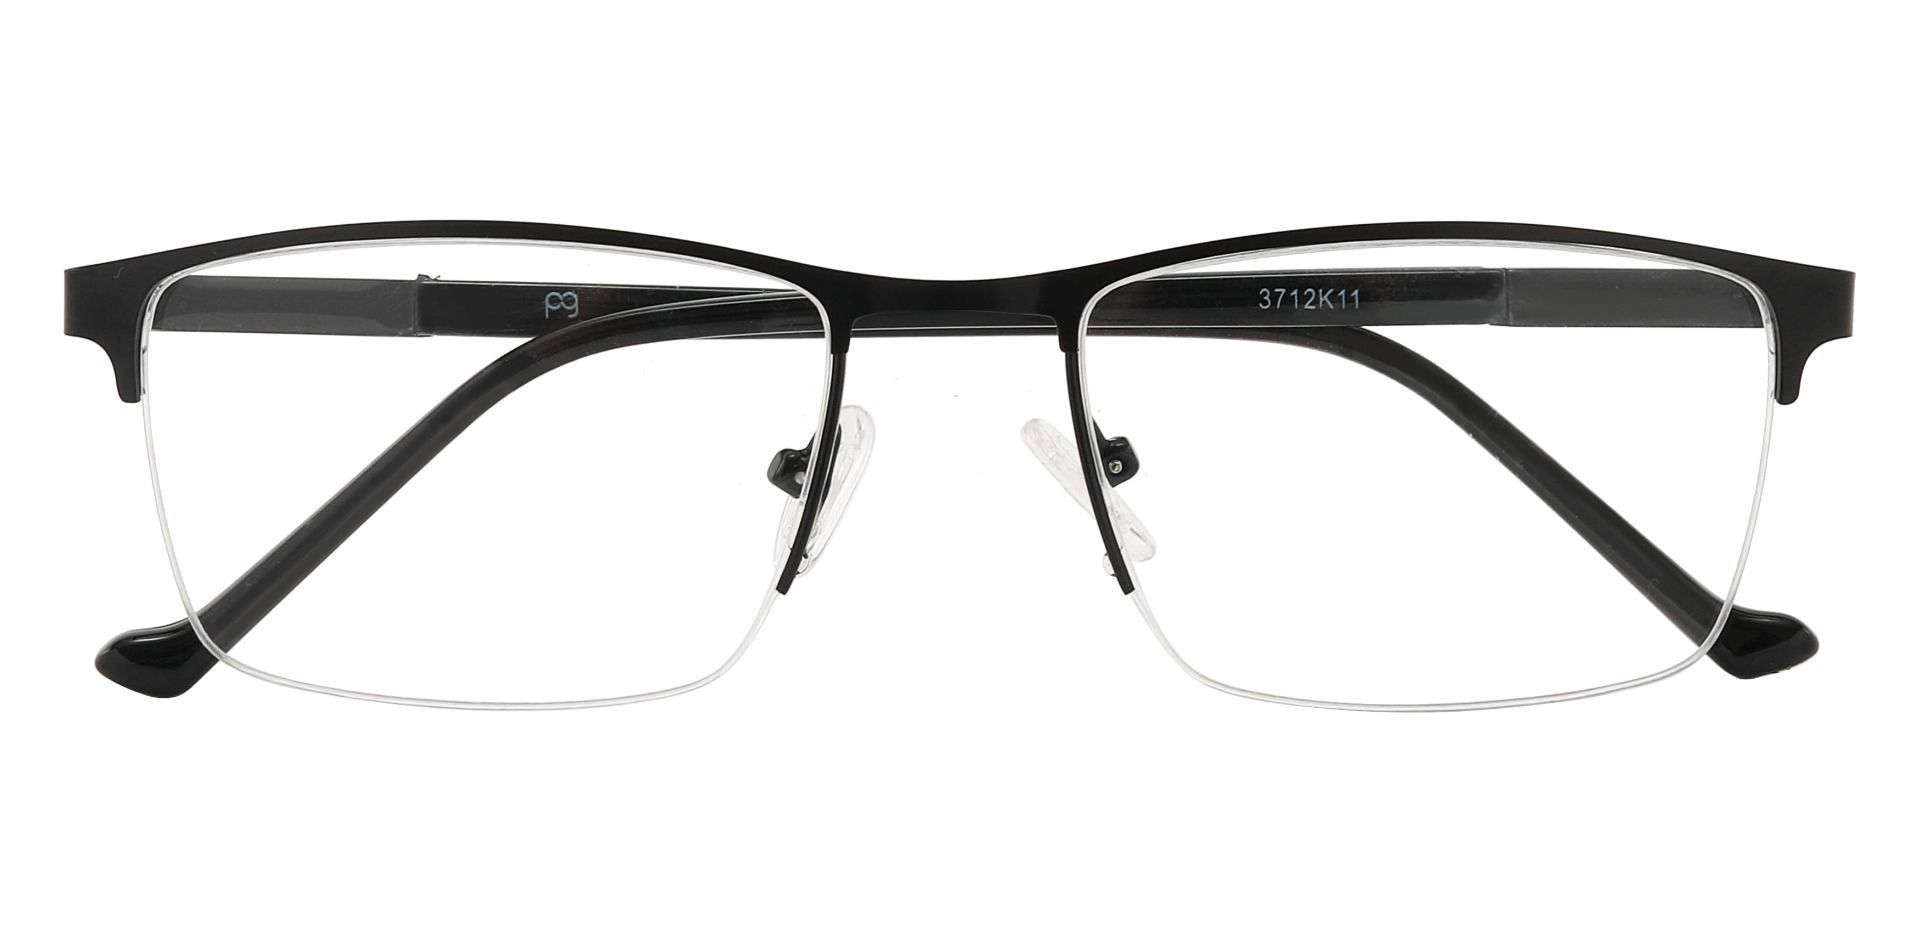 Arbor Rectangle Eyeglasses Frame - Black